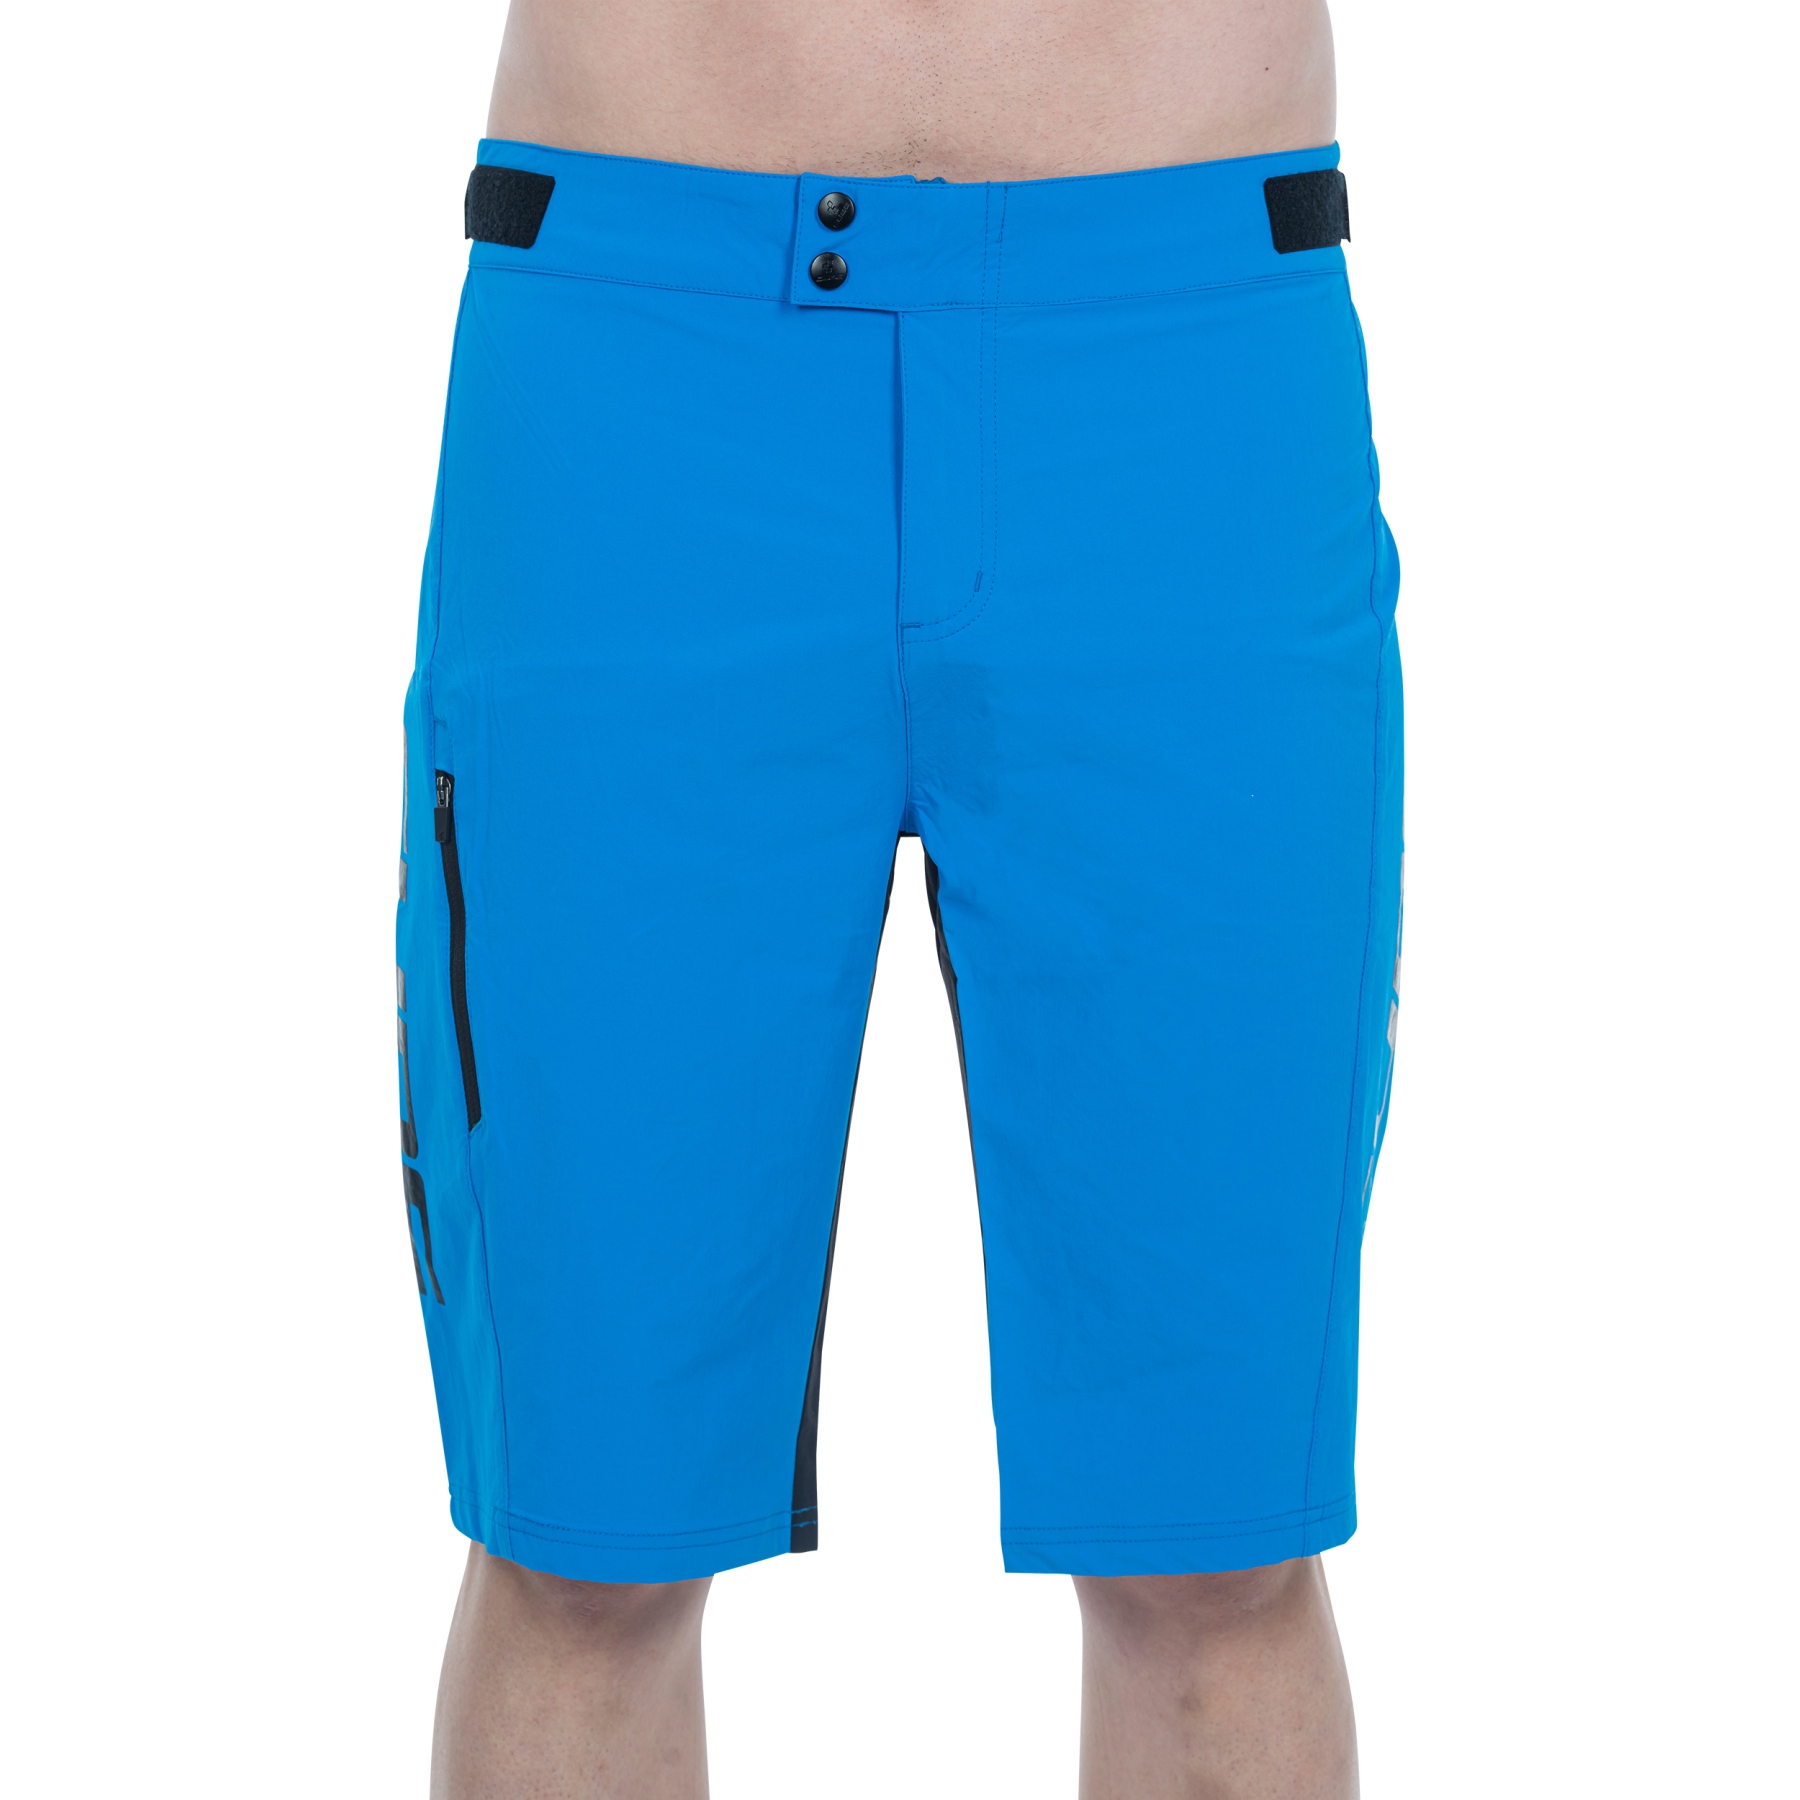 Produktbild von CUBE TEAMLINE Baggy Shorts Herren - blau